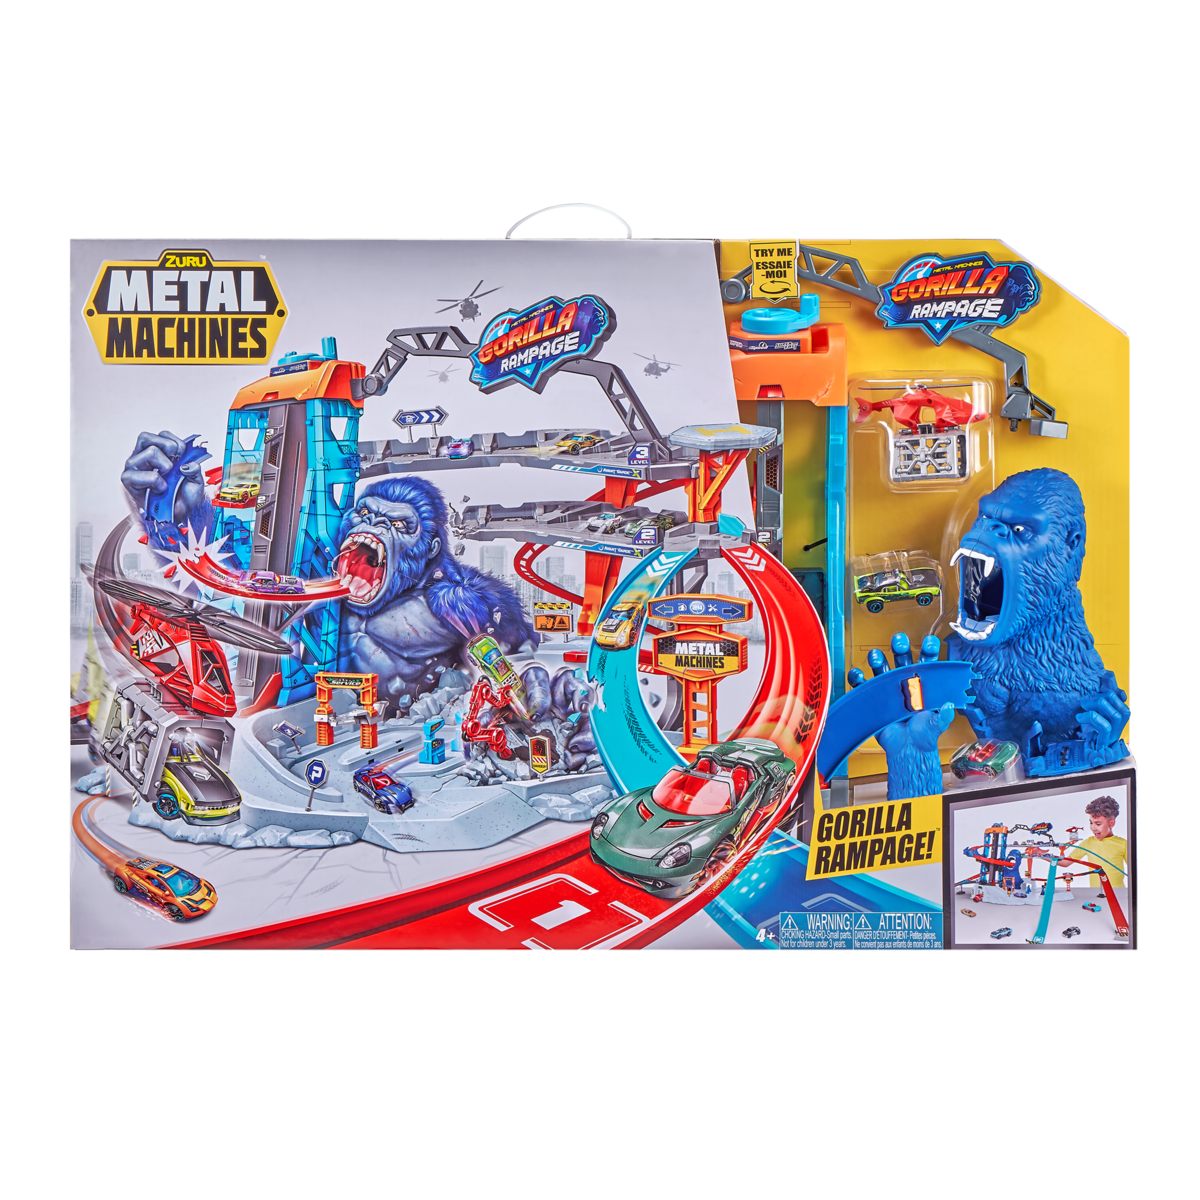 Metal Machines Gorilla Rampage Garage Playset